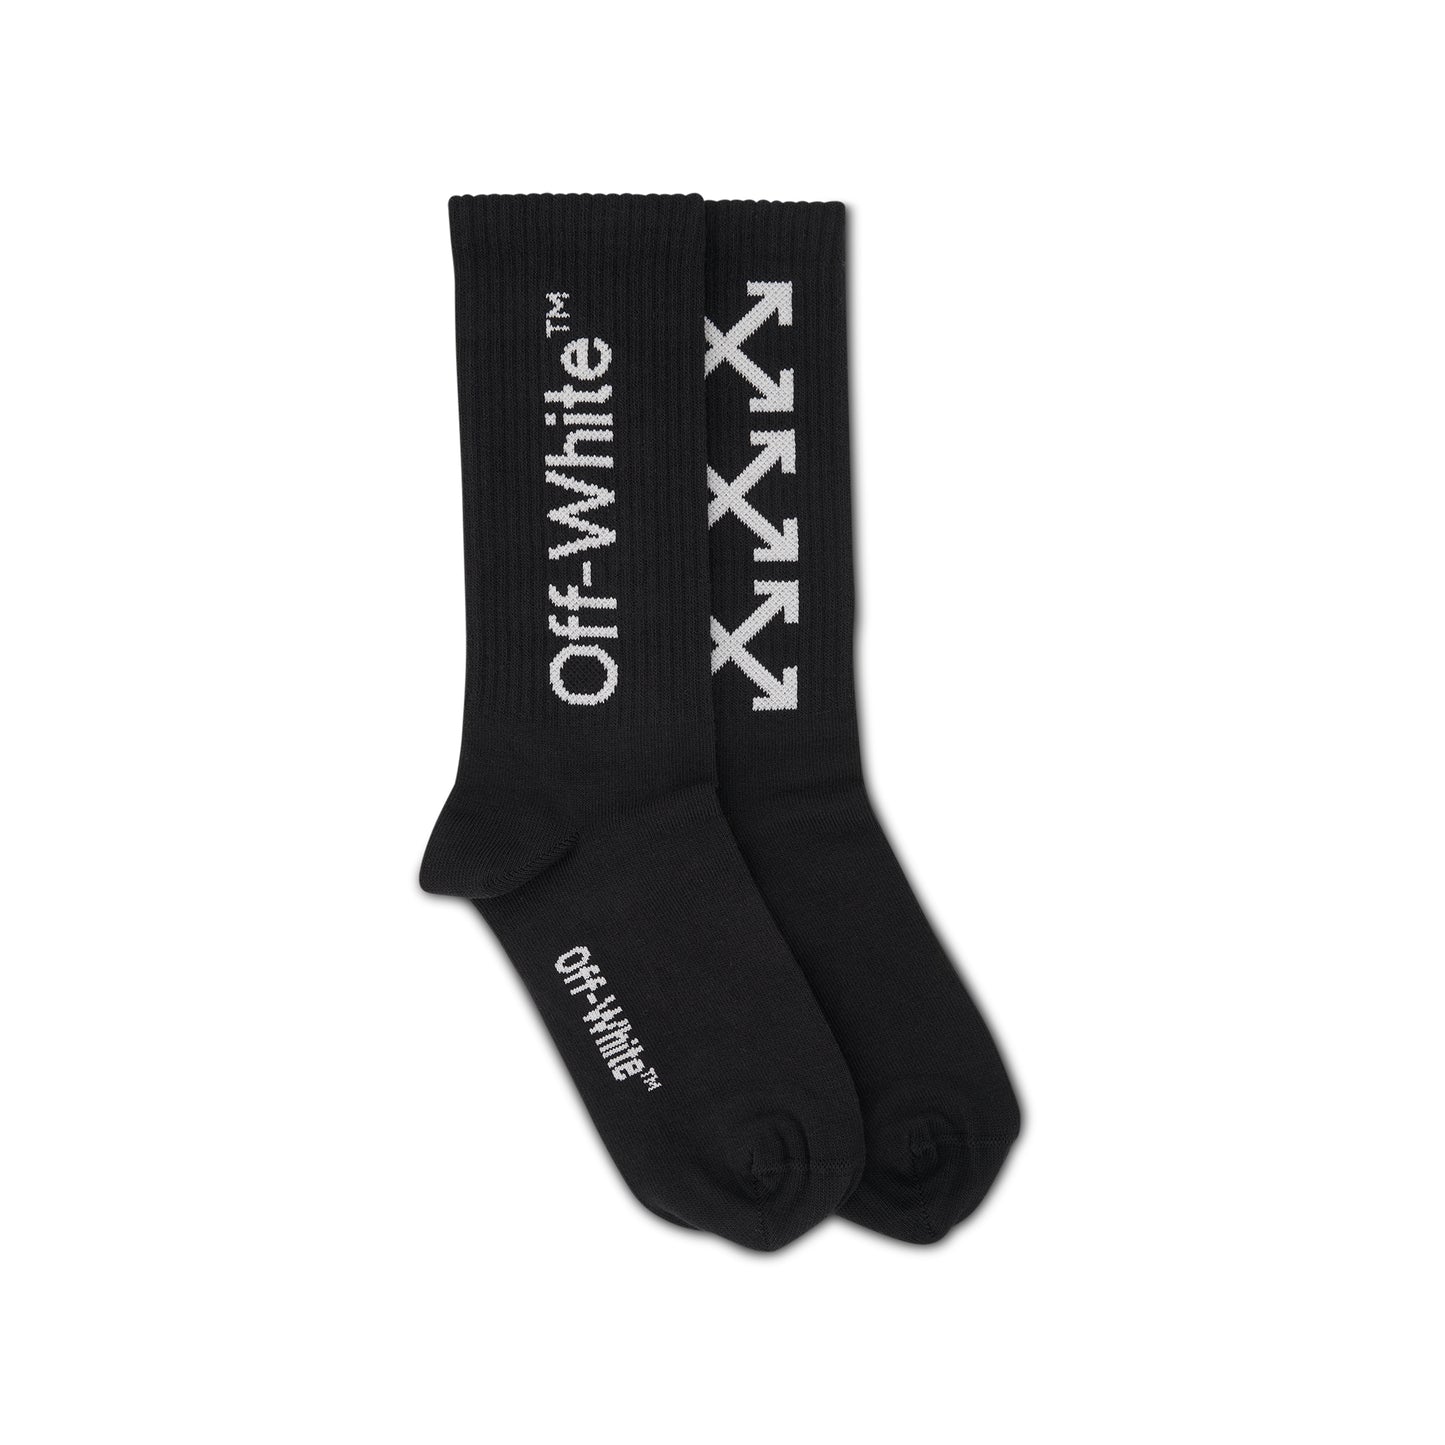 Off-White Socks in Black/White